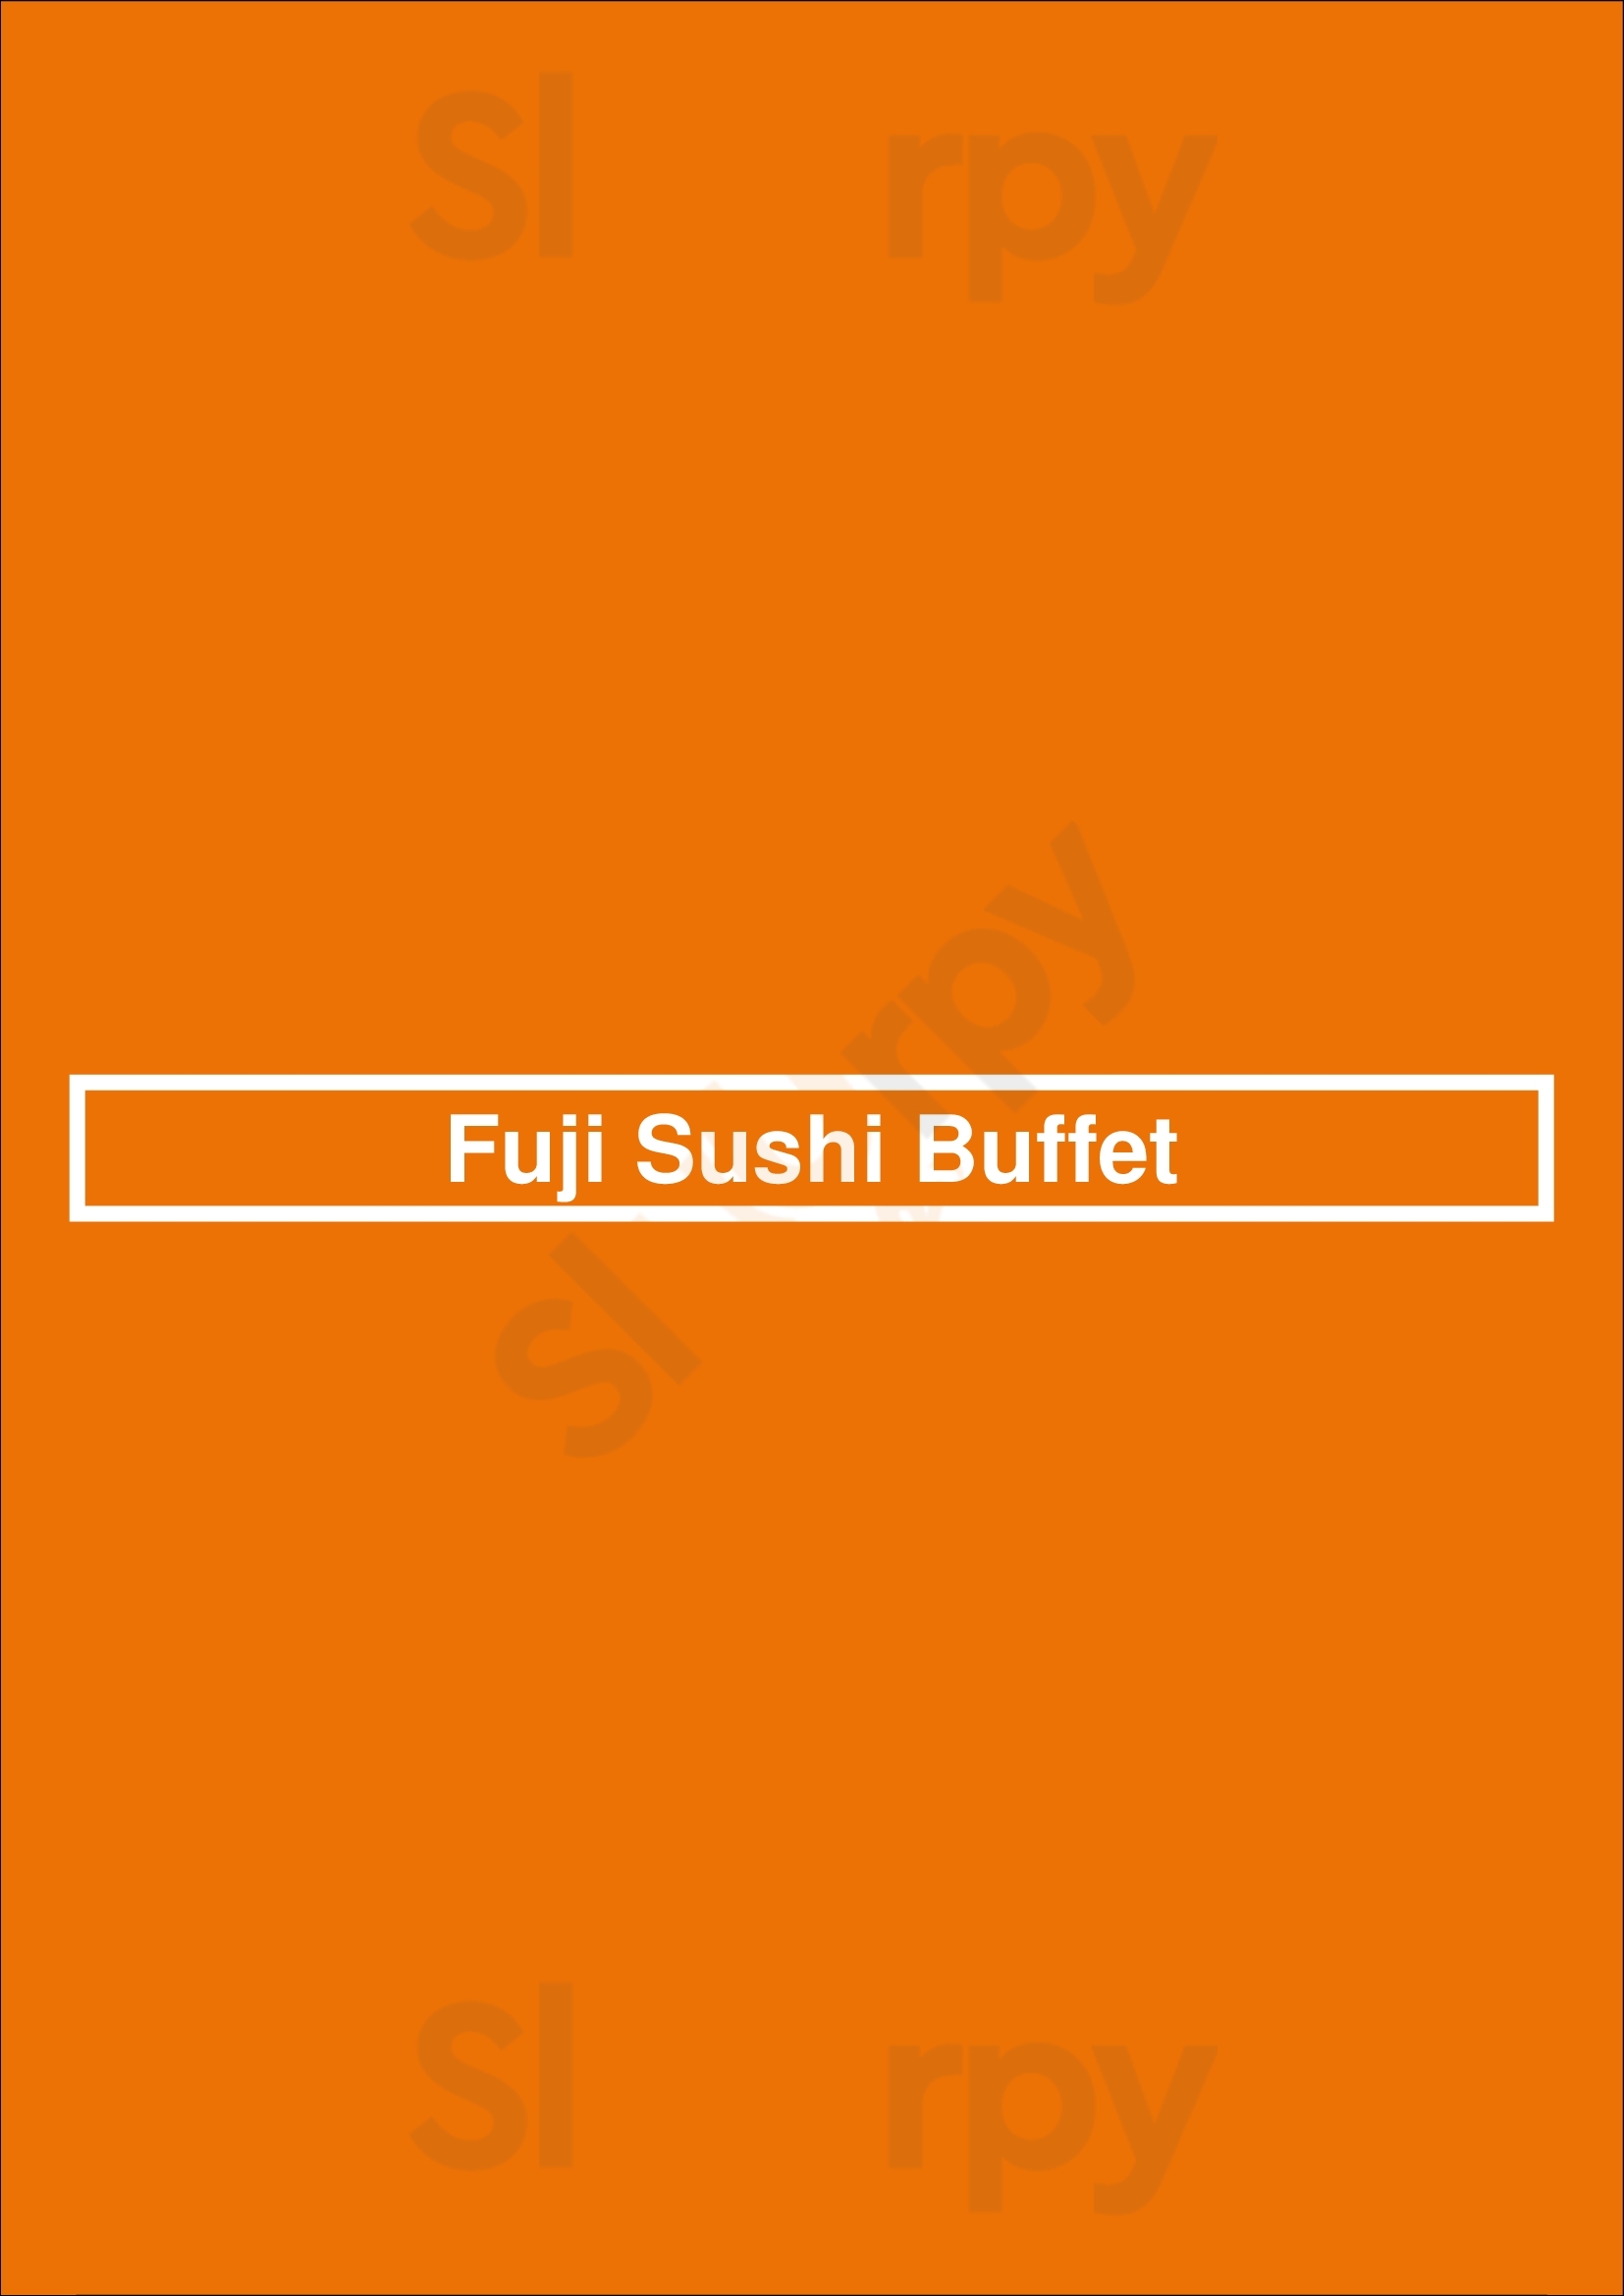 Fuji Sushi Buffet Vacaville Menu - 1